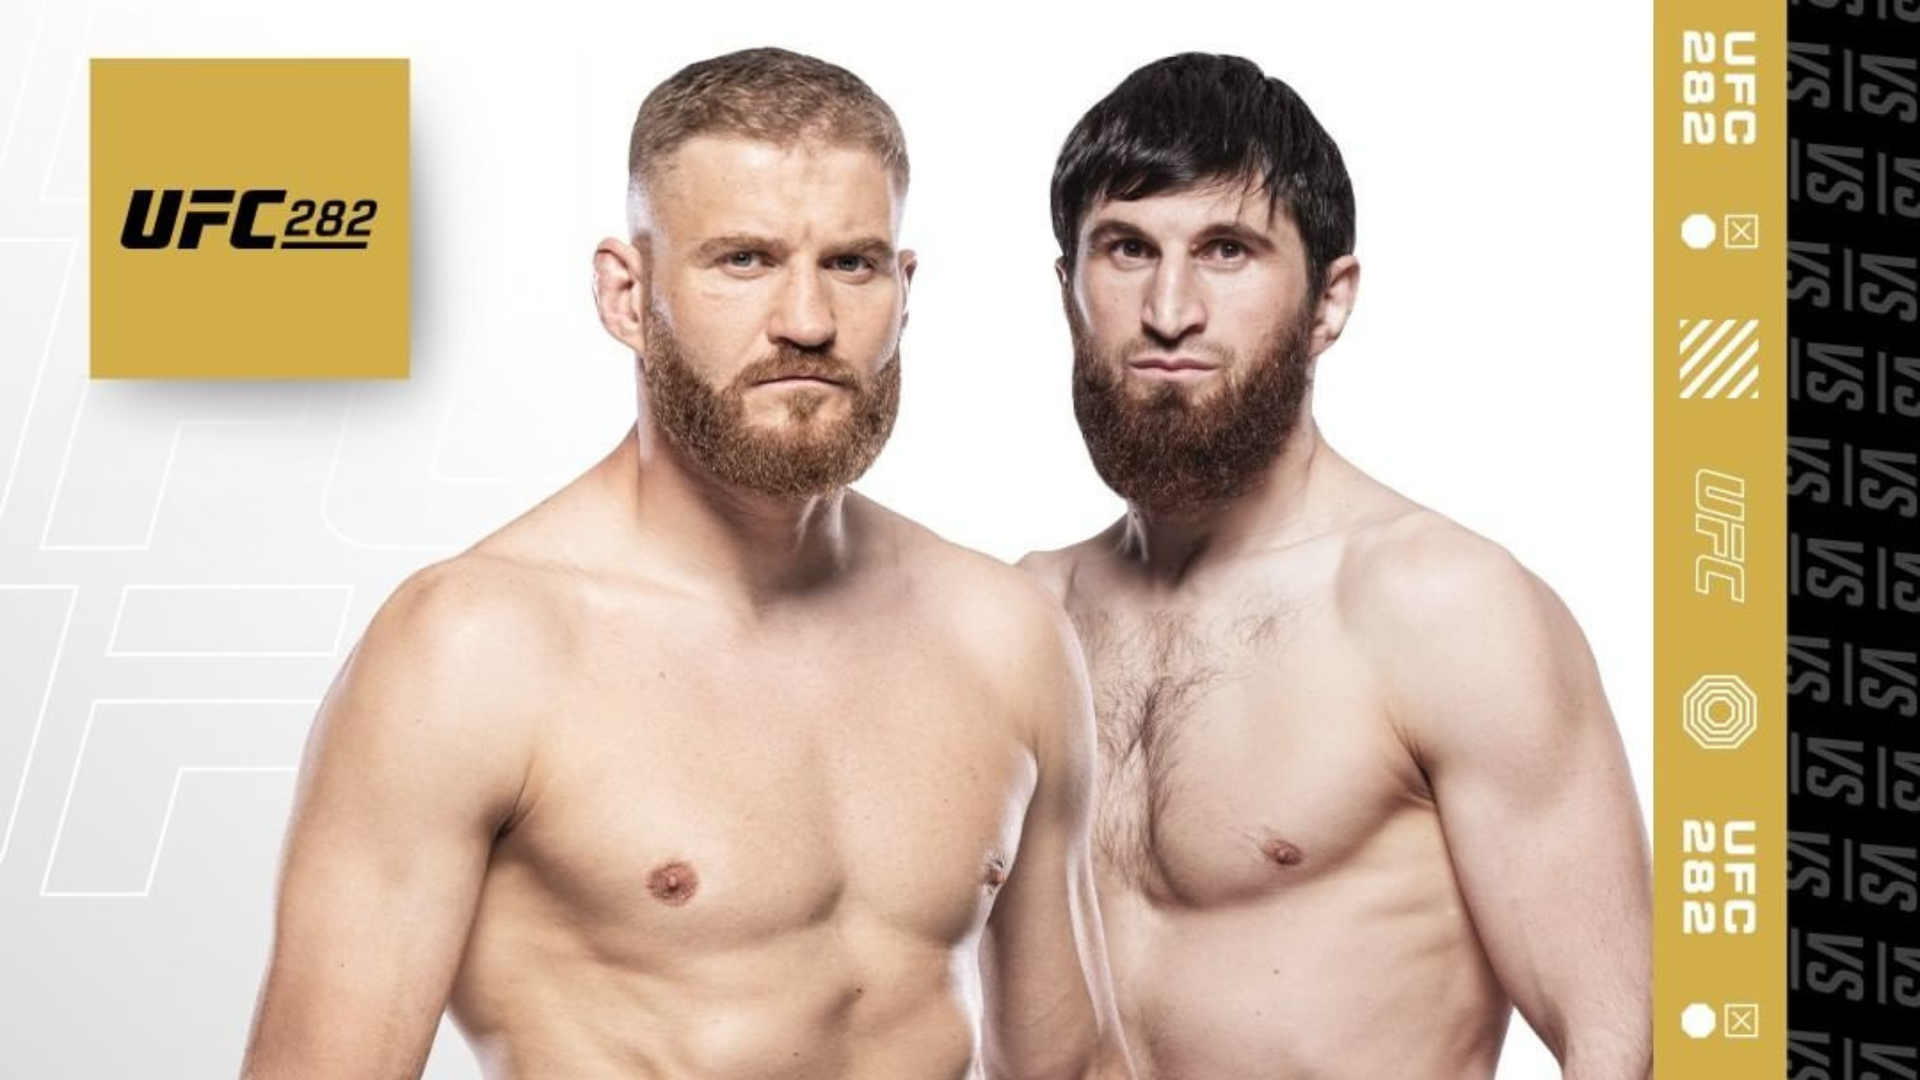 UFC 282: Blachowicz vs Ankalaev: Where to watch UFC 282 live? 